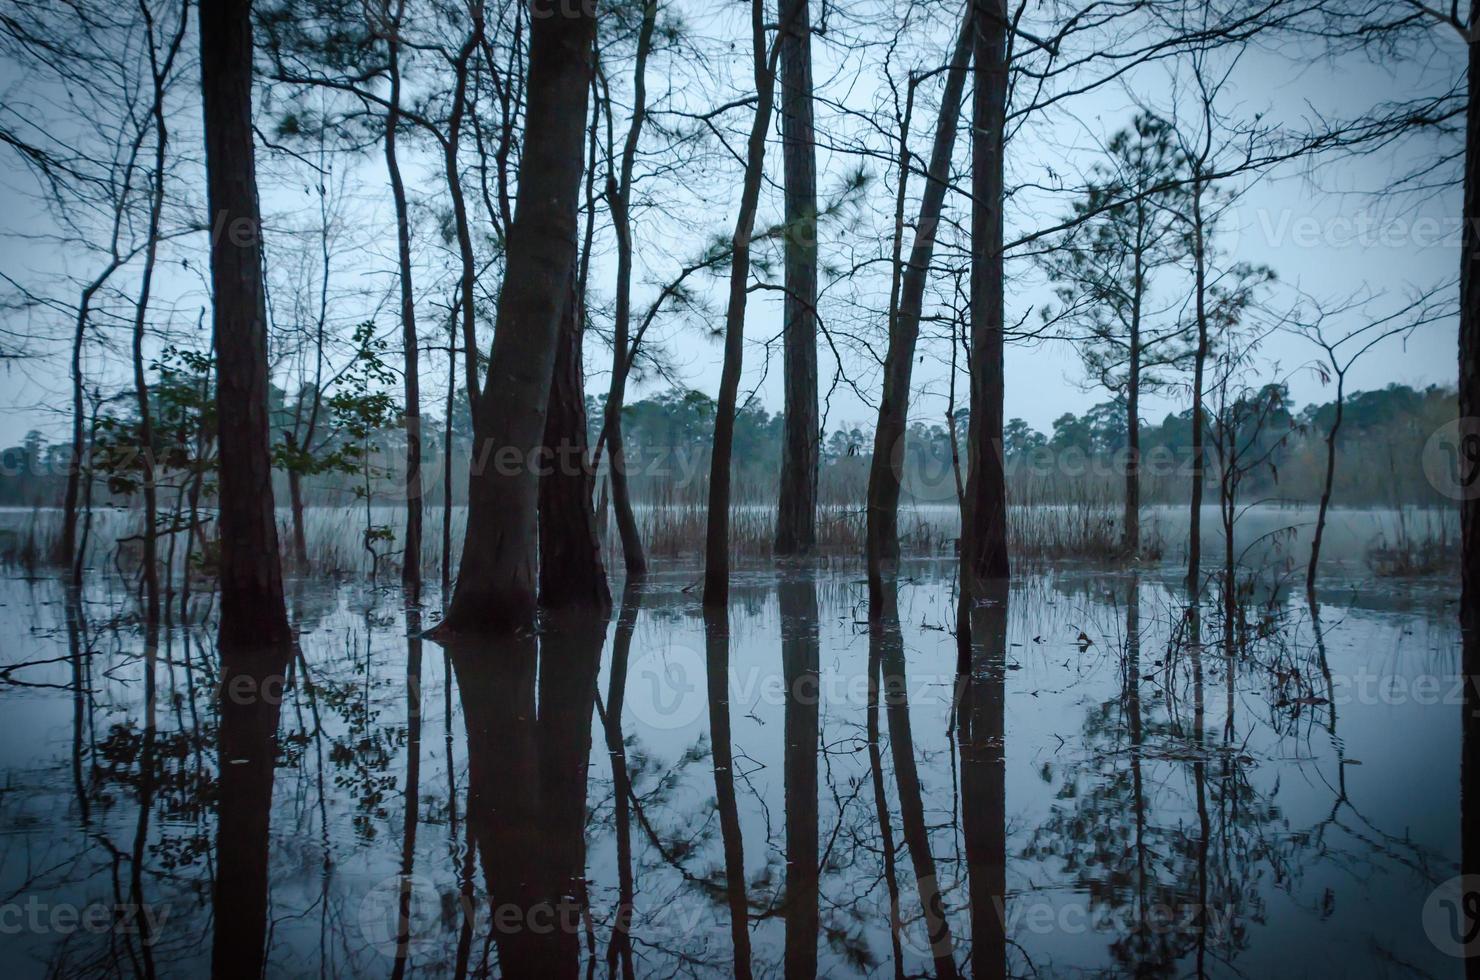 de fortes pluies ont submergé les arbres qui se dressent au bord de l'étang, leurs formes reflétées sur le sol imbibé d'eau en ce matin d'hiver avant le lever du soleil. photo